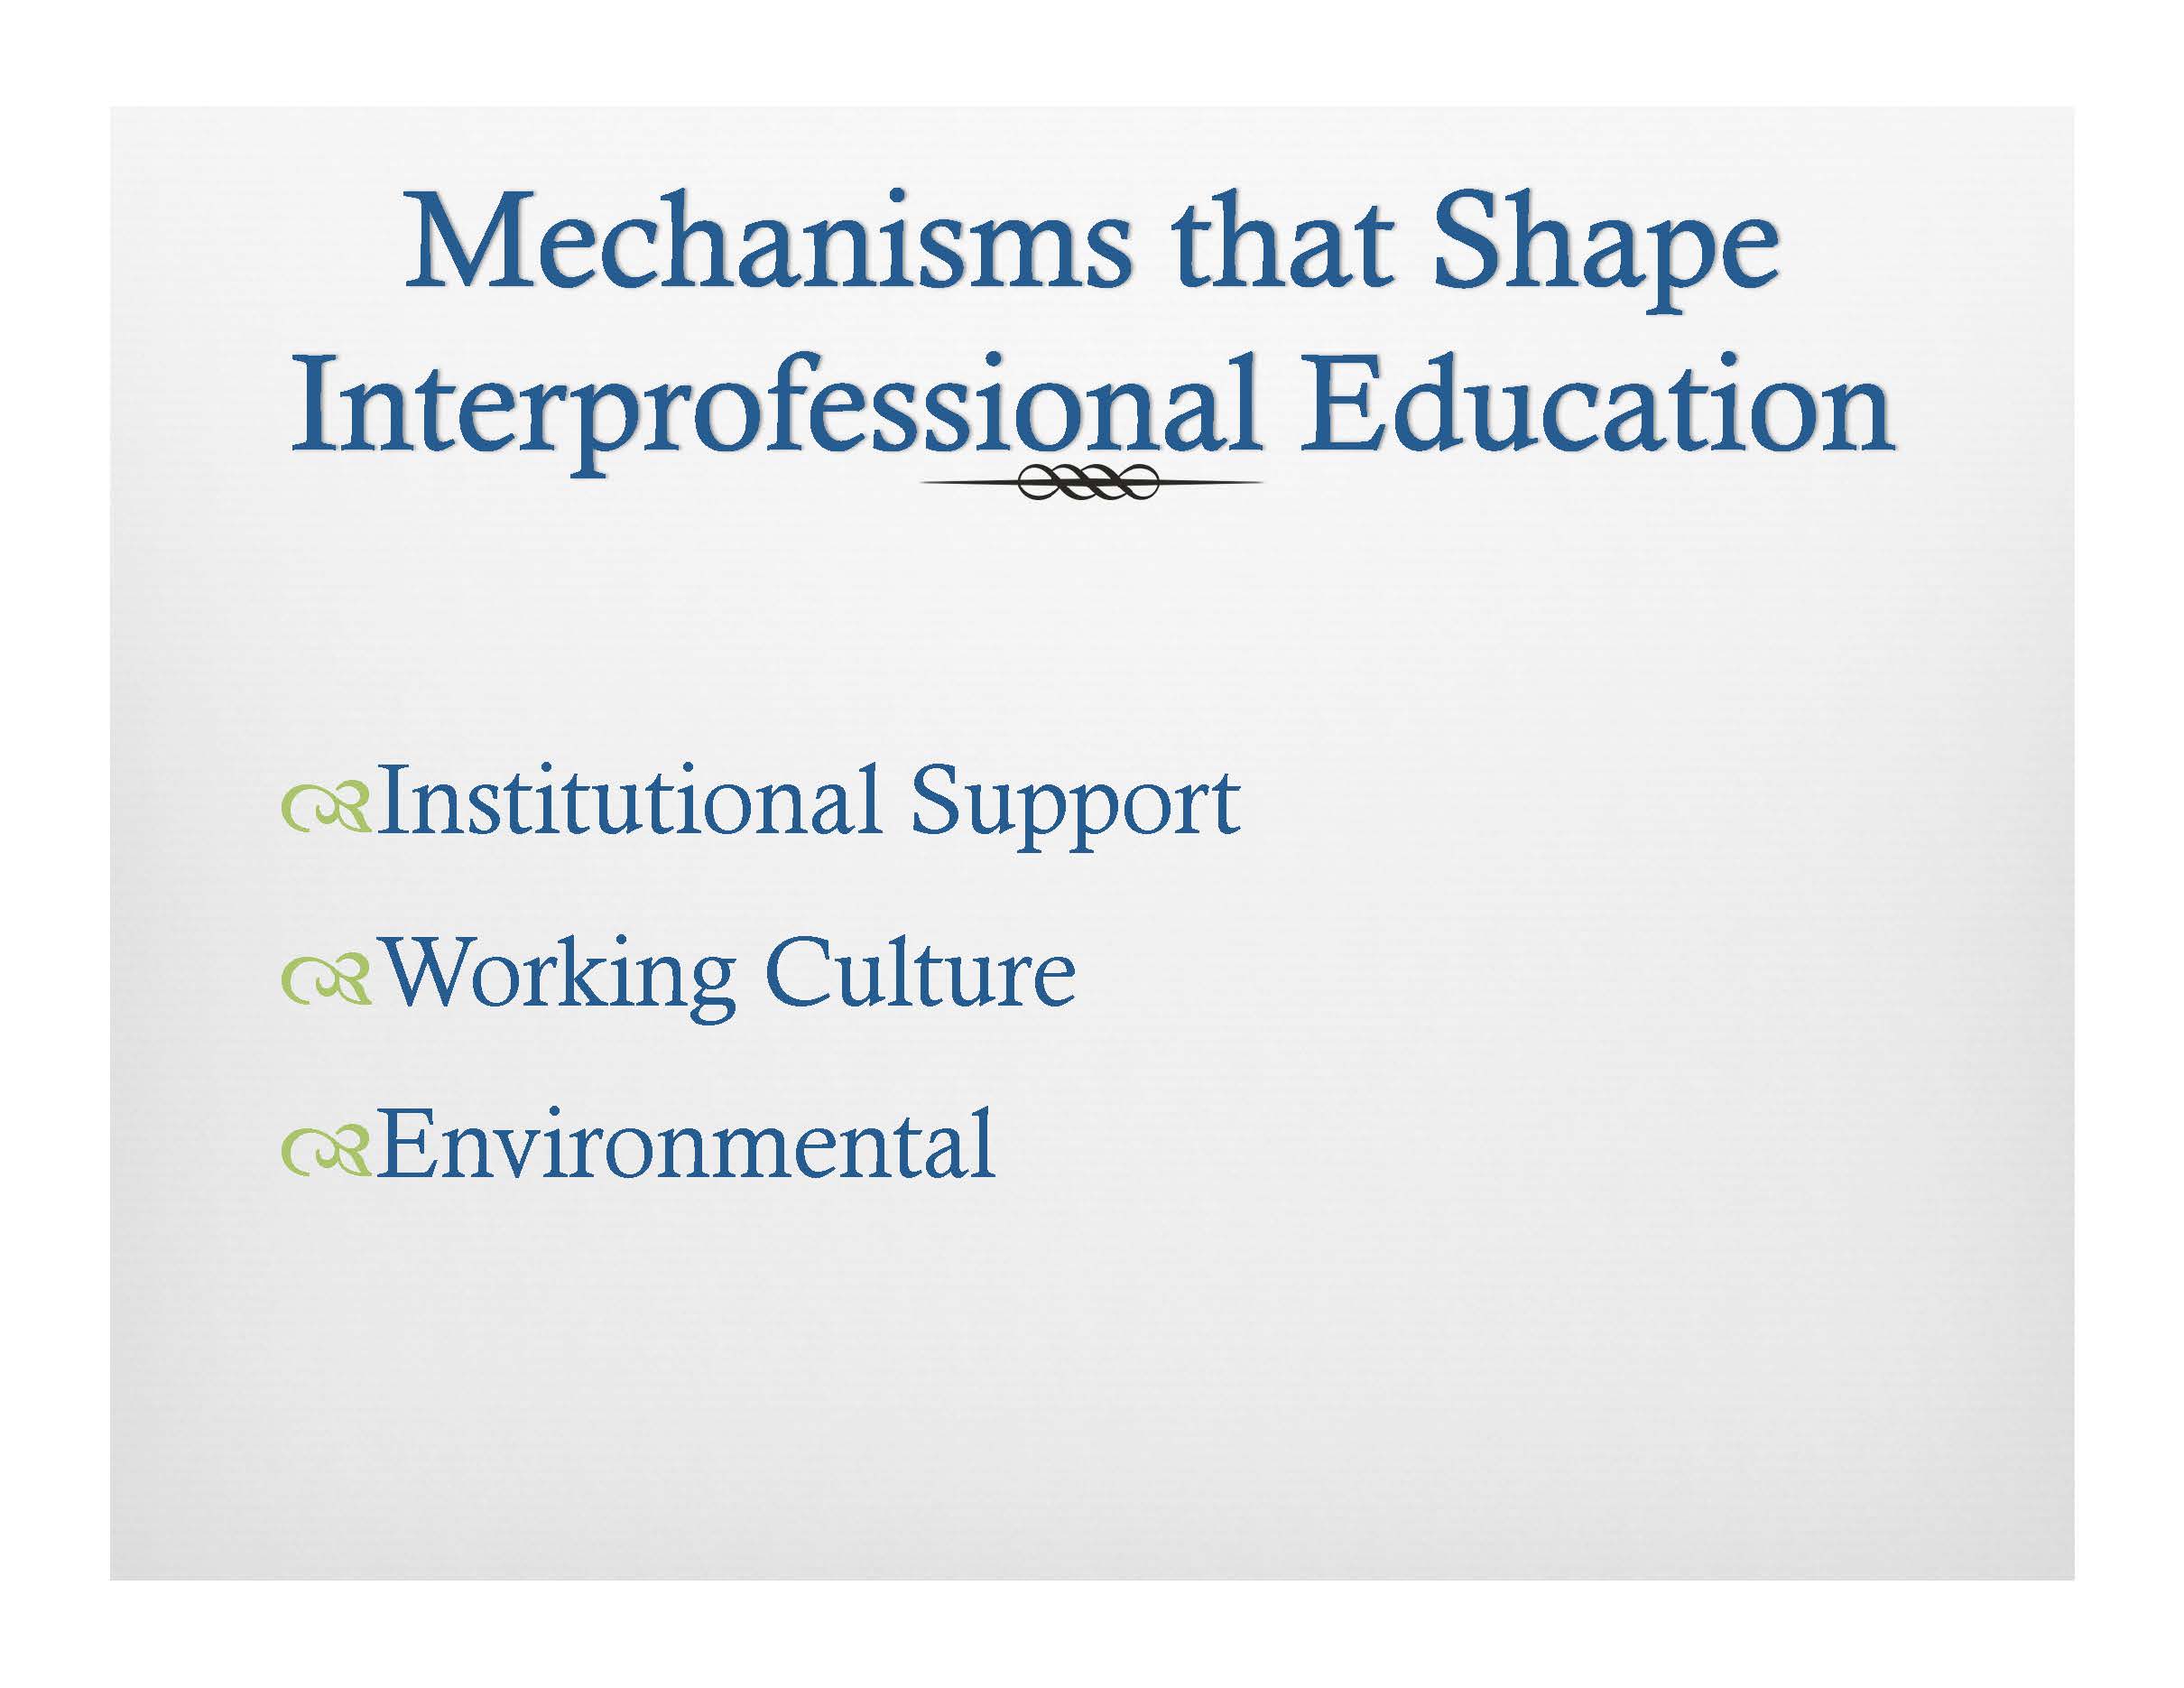 Interprofessional education Gropack_Page_09.jpg